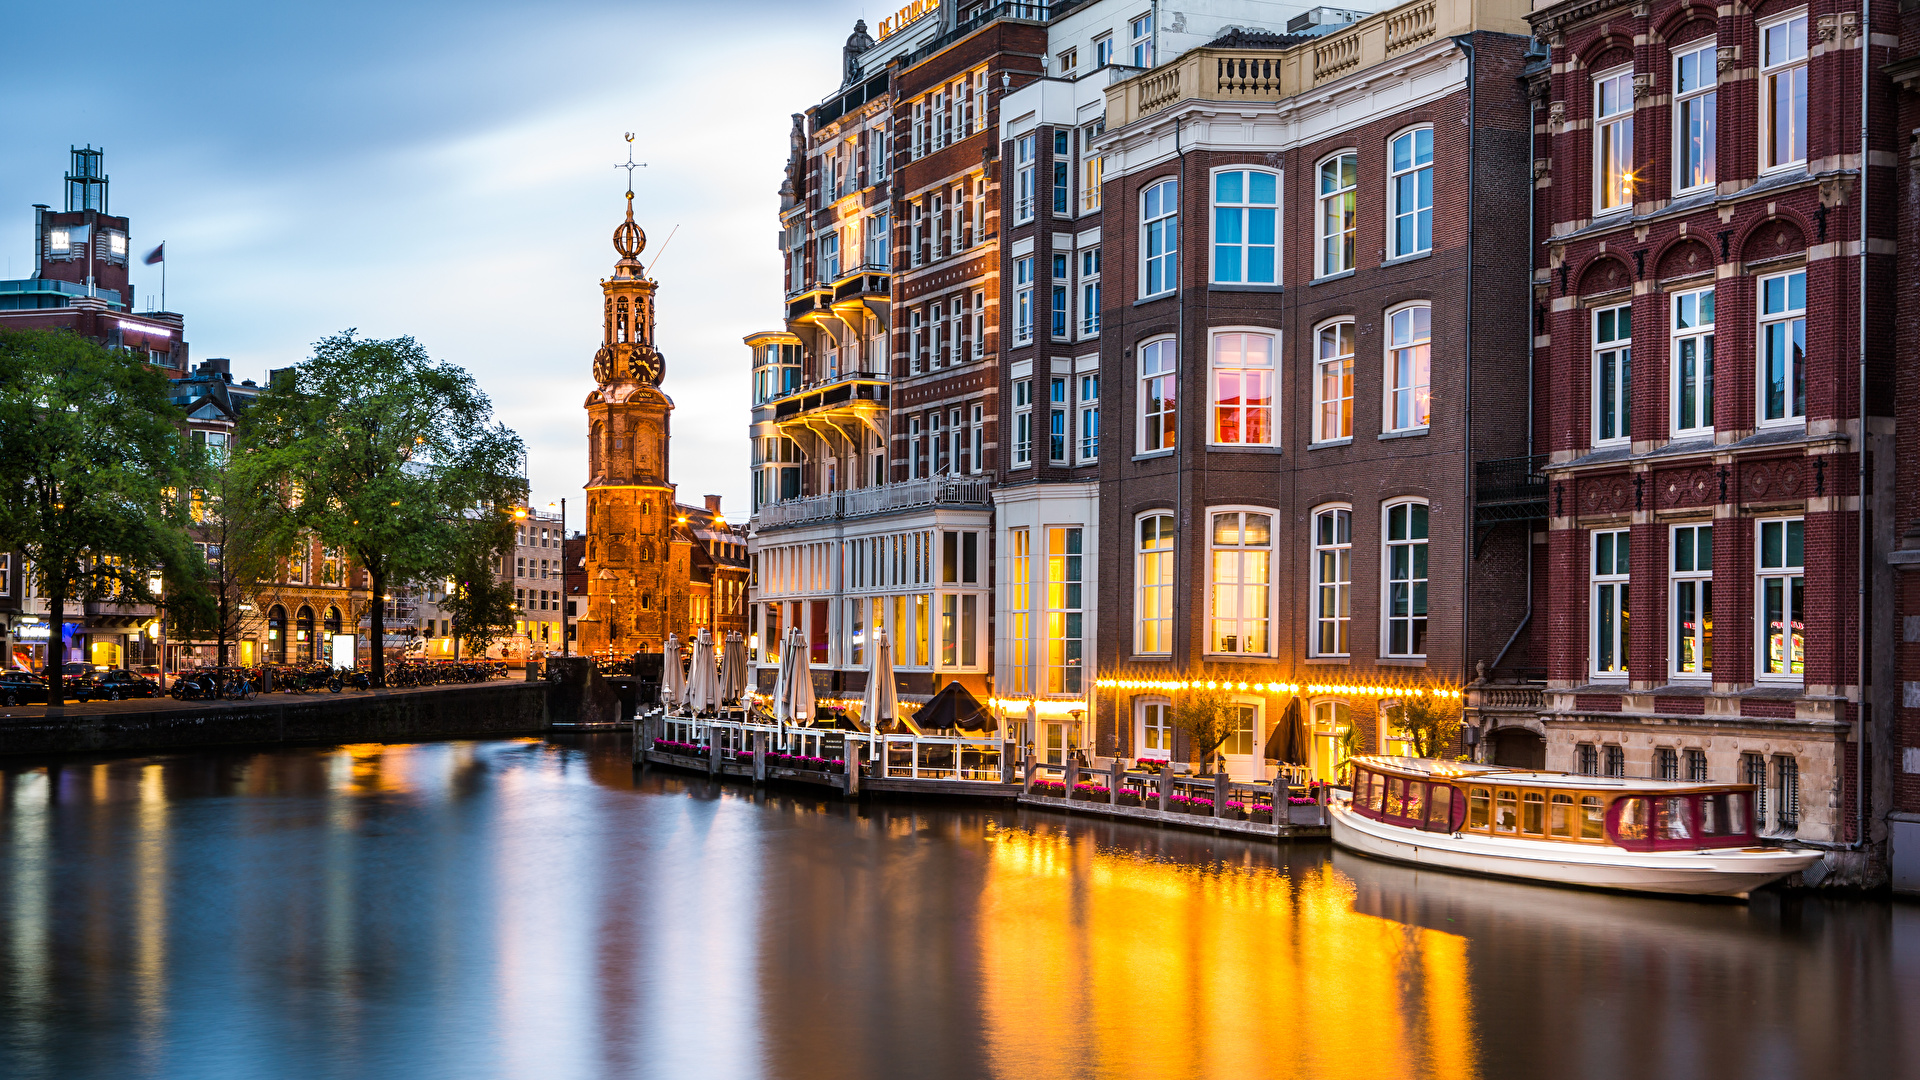 下载壁纸 阿姆斯特丹, 阿姆斯特丹市, 资本和荷兰最大的城市, 荷兰 免费为您的桌面分辨率的壁纸 2048x1365 — 图片 №653099